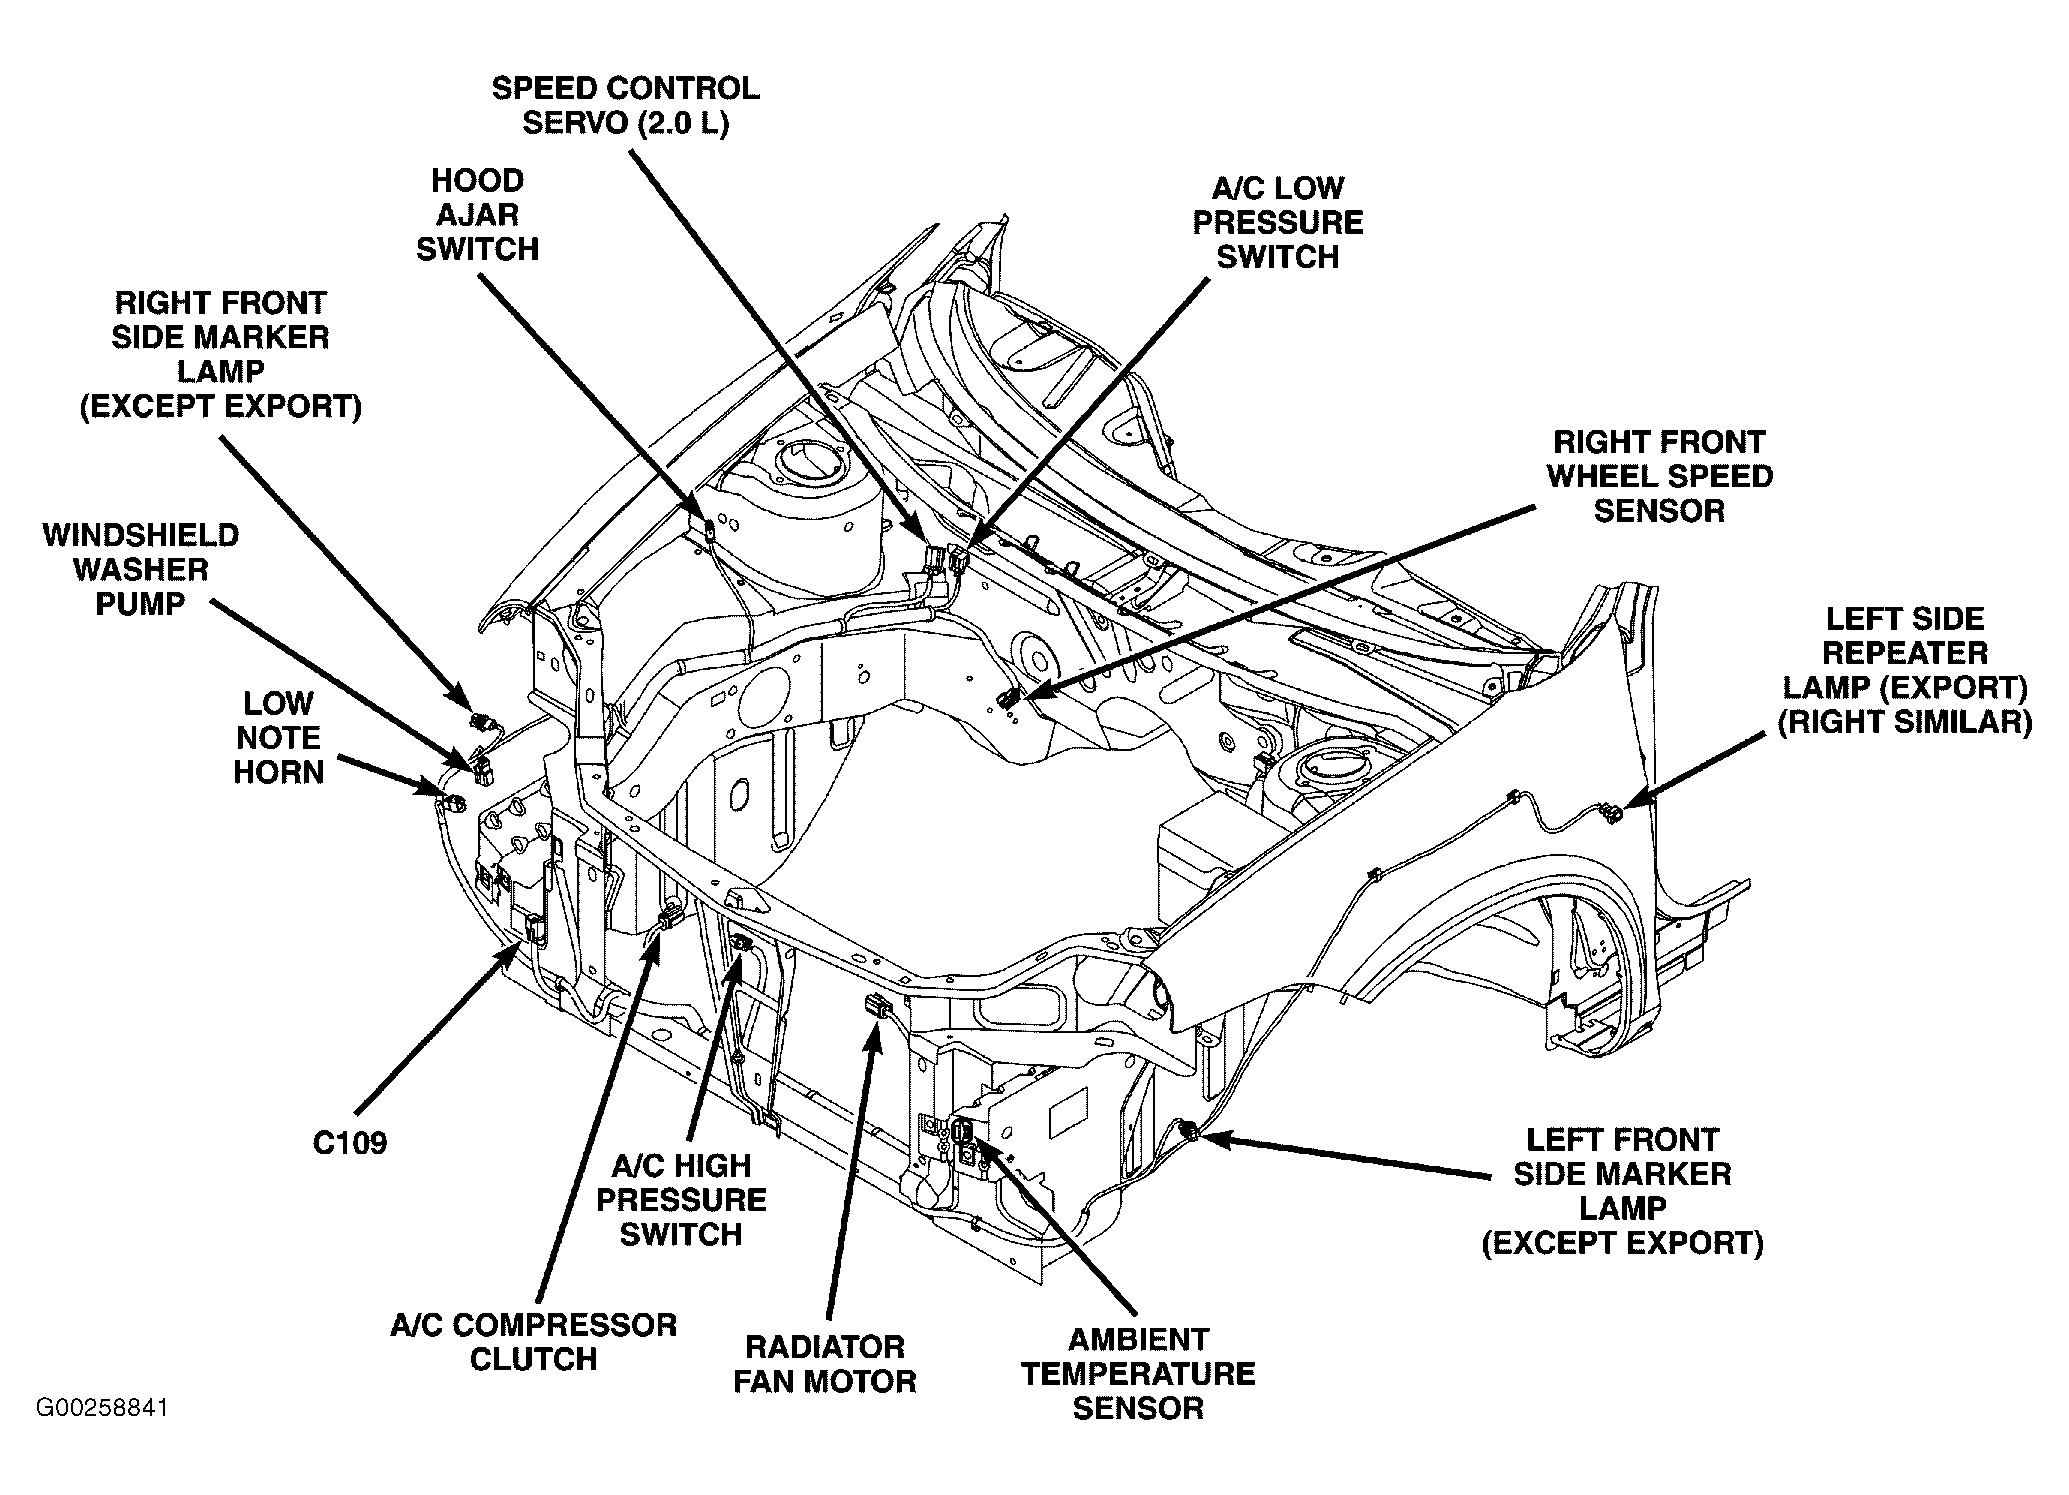 Dodge SX SRT-4 2005 - Component Locations -  Engine Compartment